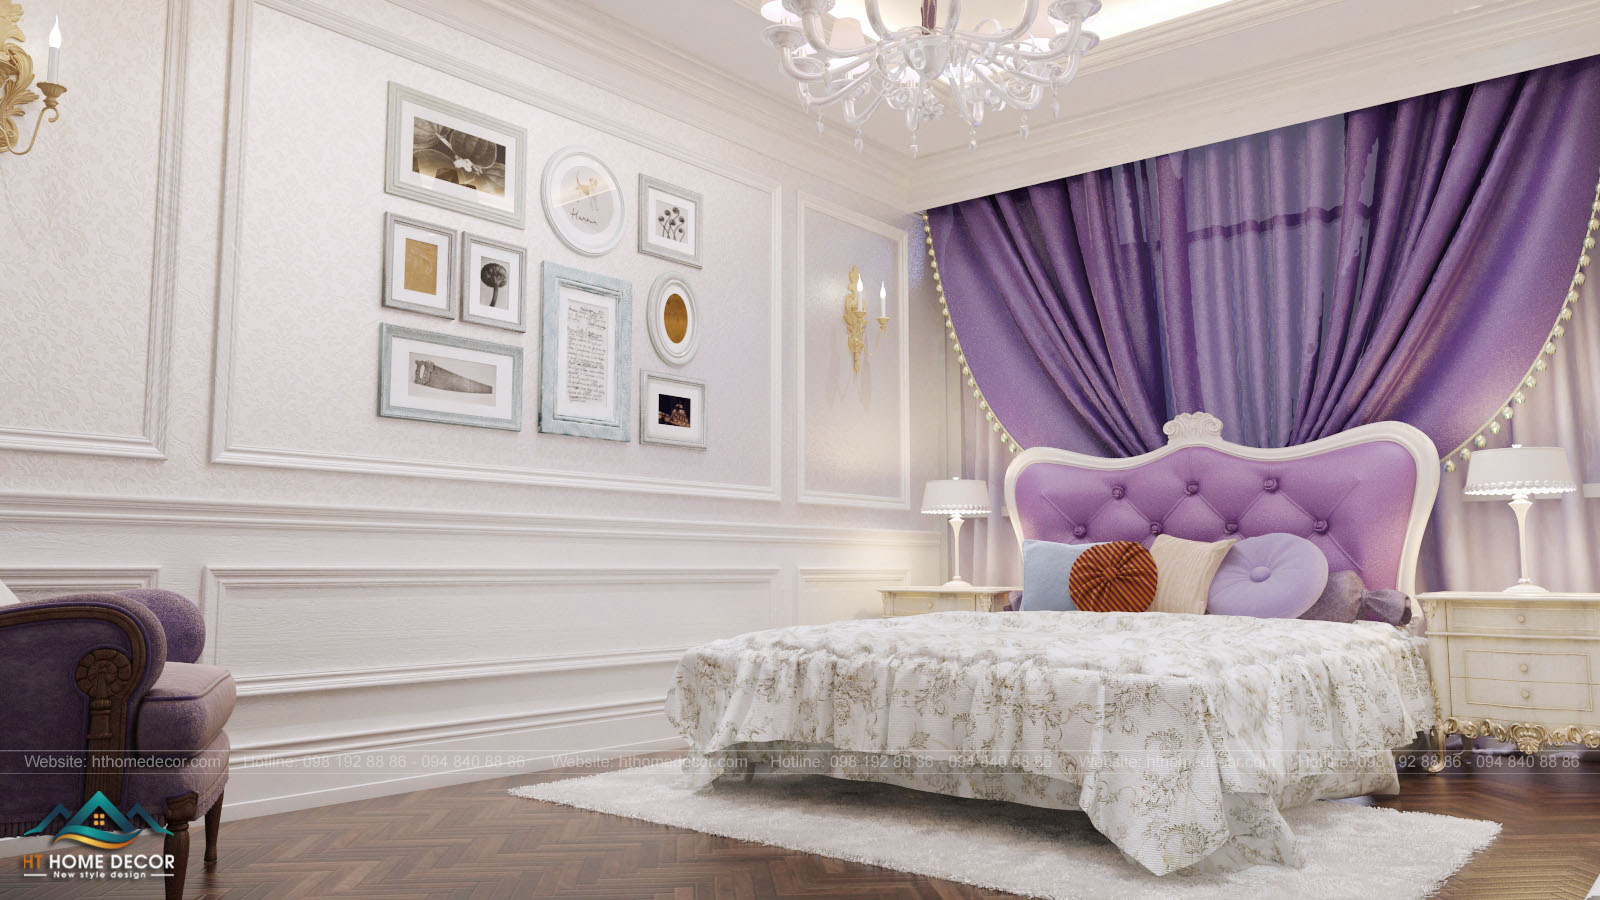 Phòng ngủ cho con gái được thiết kế rộng rãi, tấm rèm màu tím đã tạo nên điểm nhấn cho không gian trắng.